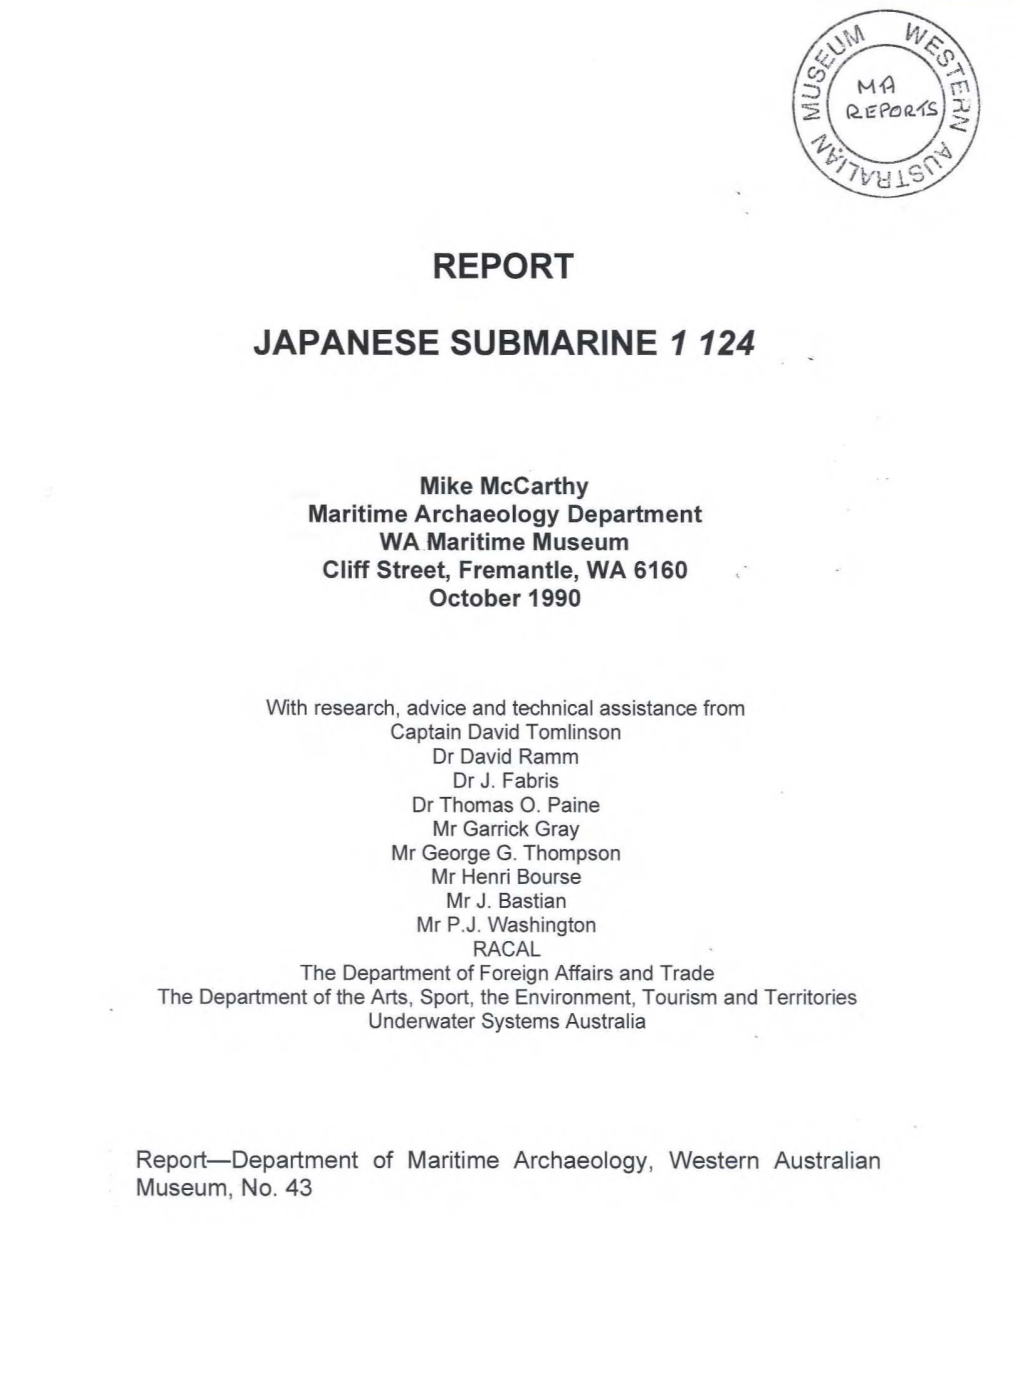 Report Japanese Submarine 1124